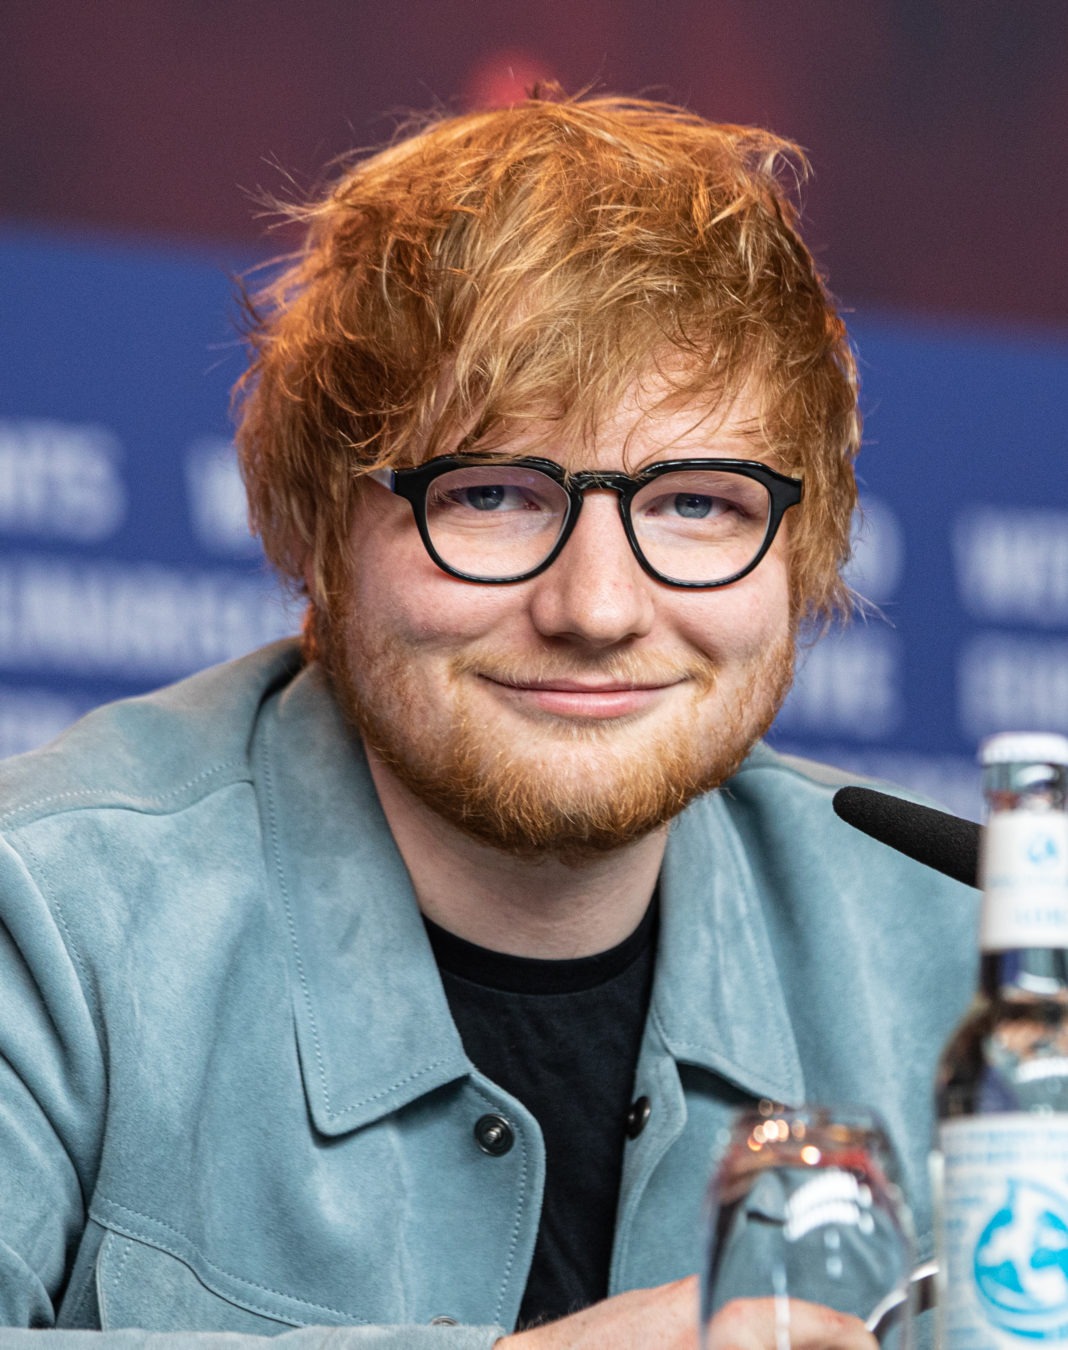 Starul pop britanic Ed Sheeran s-a autoizolat după ce a aflat că are COVID-19